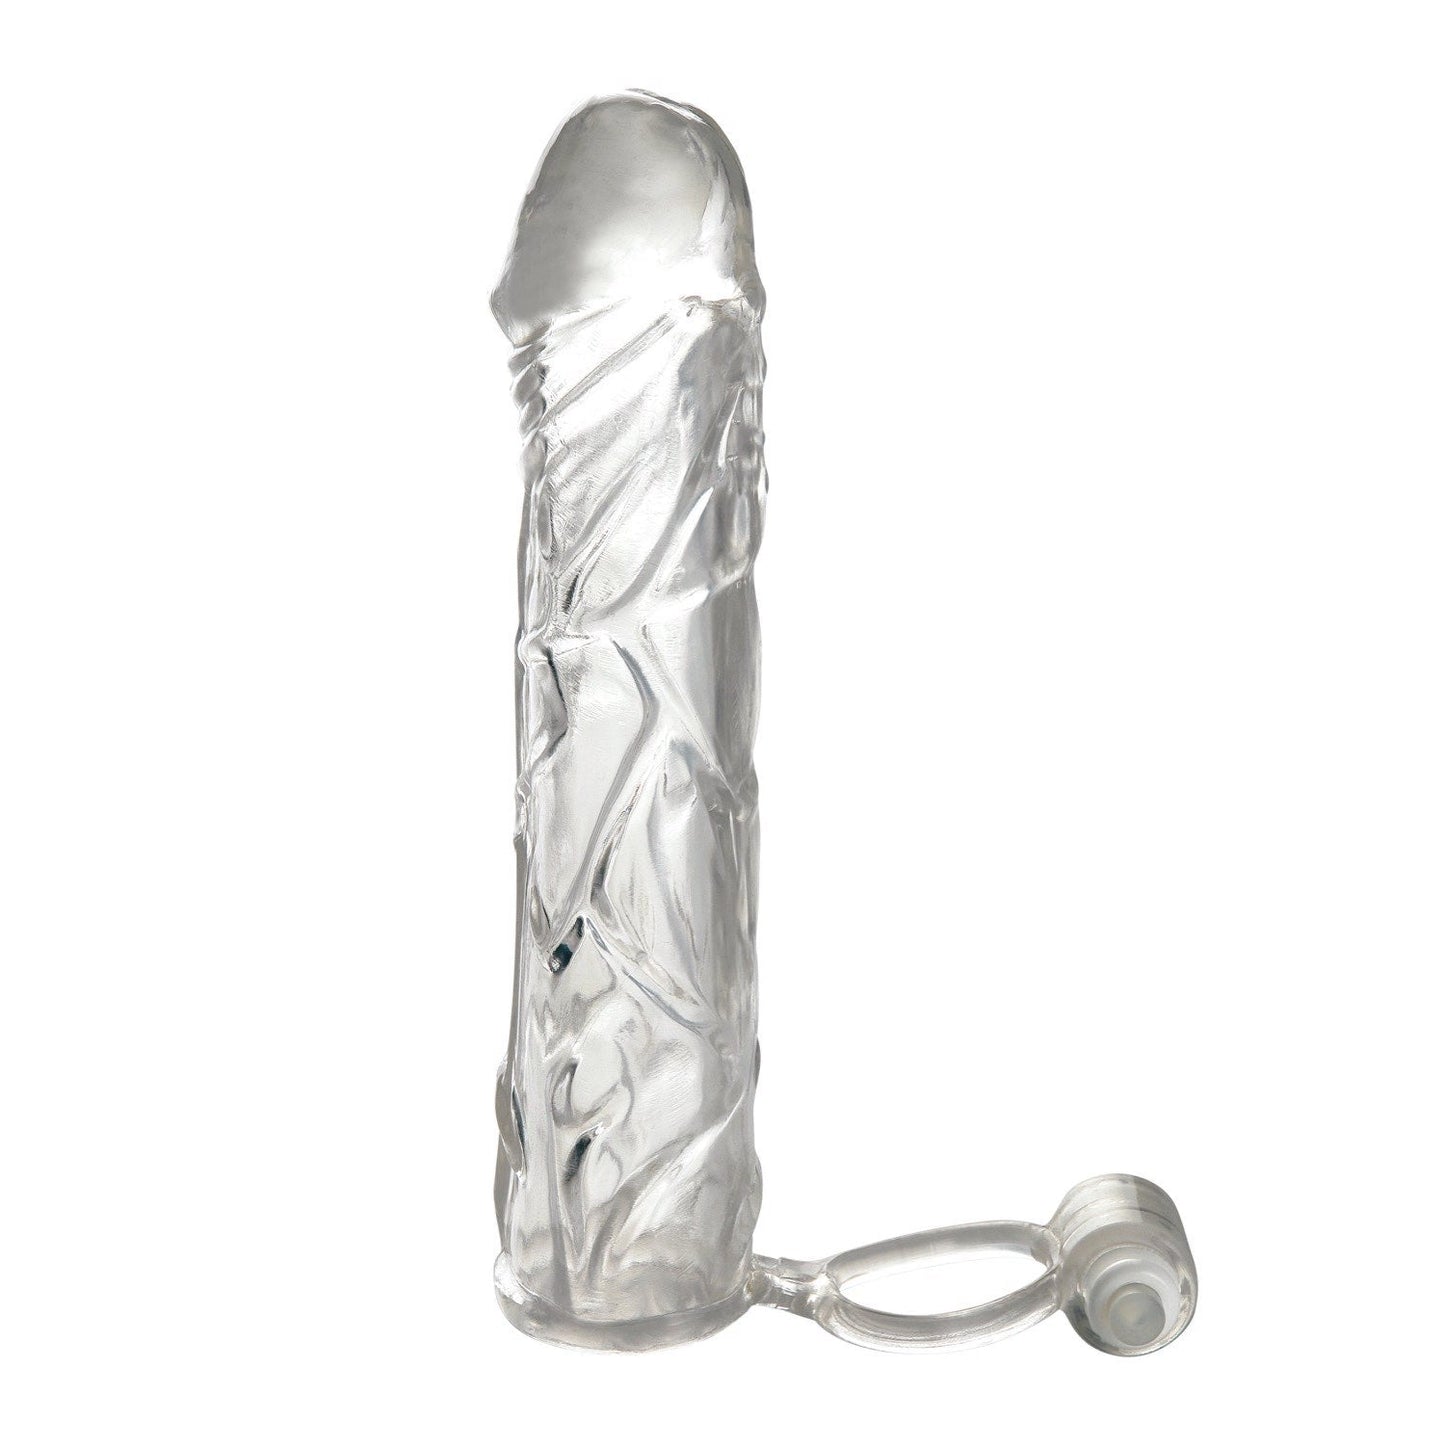 振动超级套 - 透明阴茎延长套，带振动球带